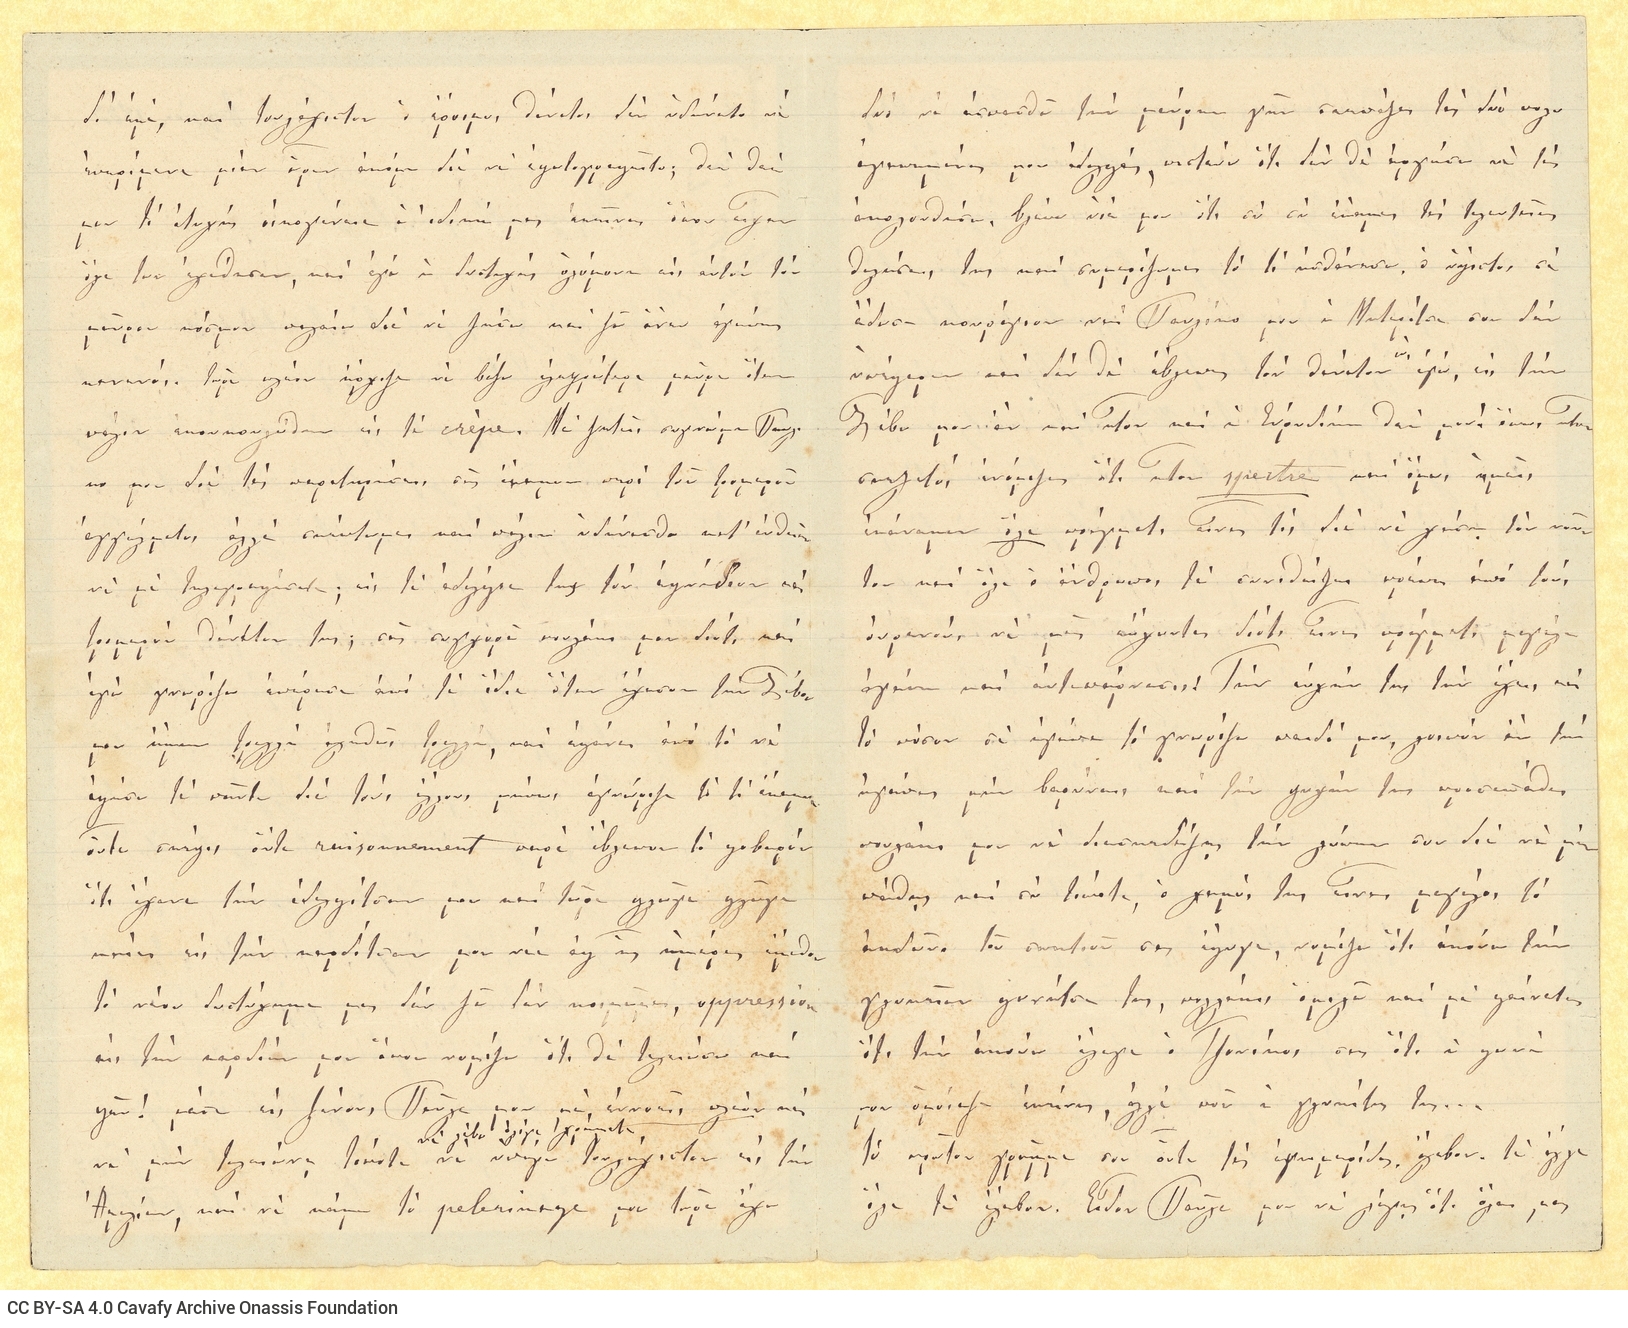 Χειρόγραφη επιστολή της Ευβουλίας Παπαλαμπρινού προς τον ανιψιό τη�